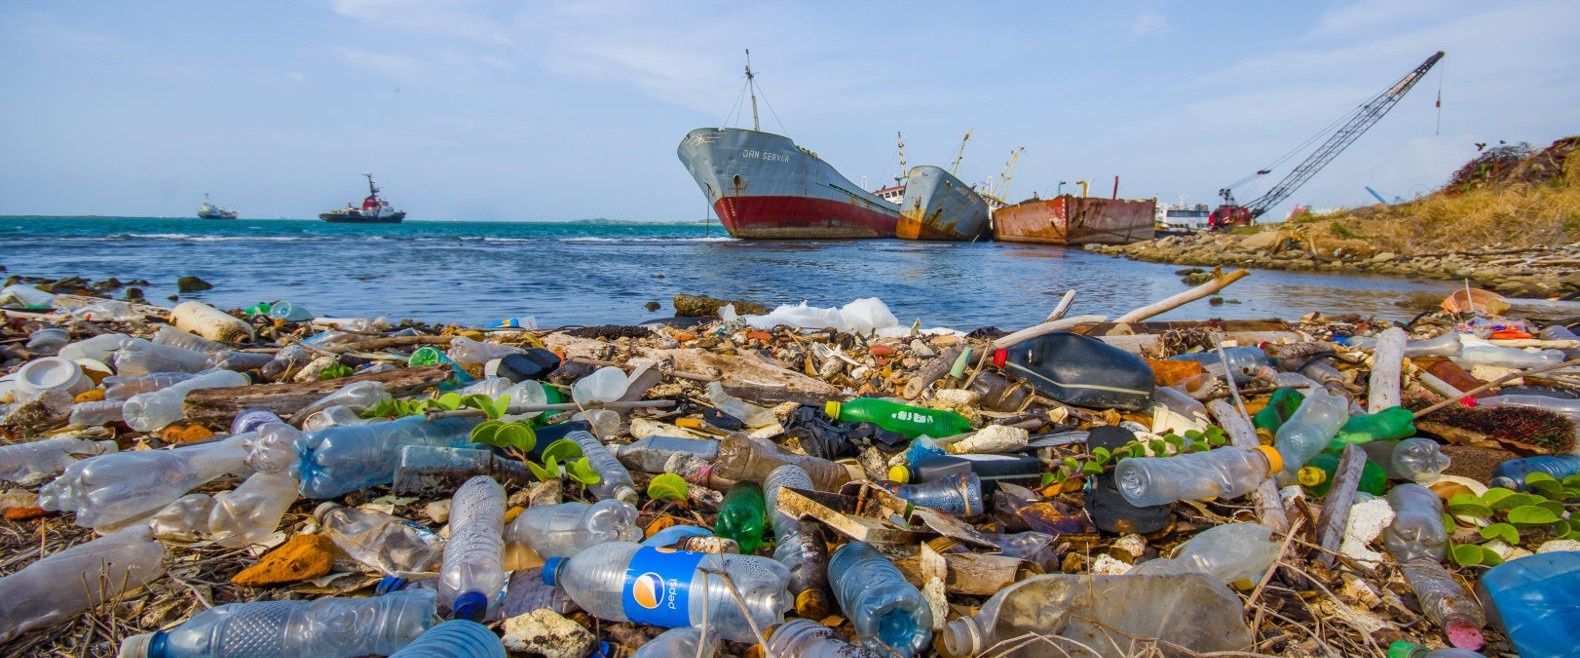 plastic-trash-in-oceans-and-waterways-1580x658